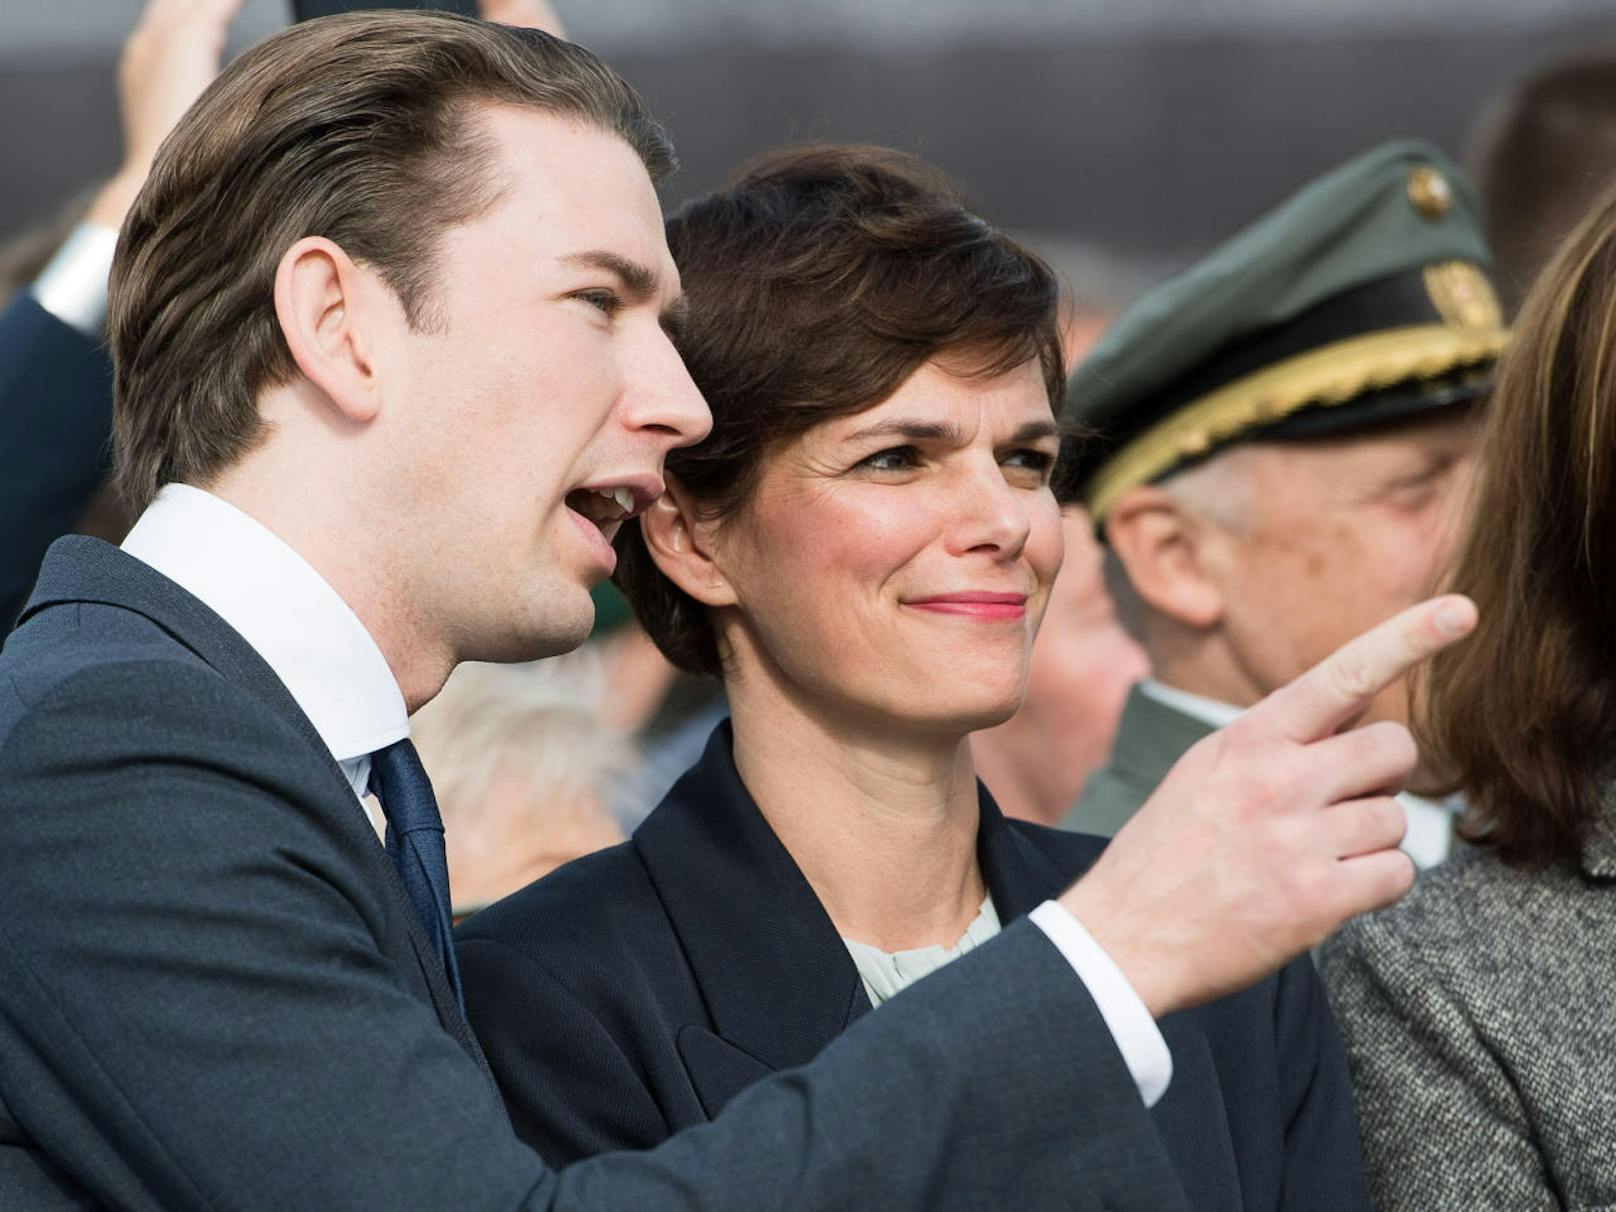 SPÖ-Chefin Pamela Rendi-Wagner: "Die Inszenierungen und Verzögerungen müssen ein Ende haben. Es muss mehr Tempo geben."